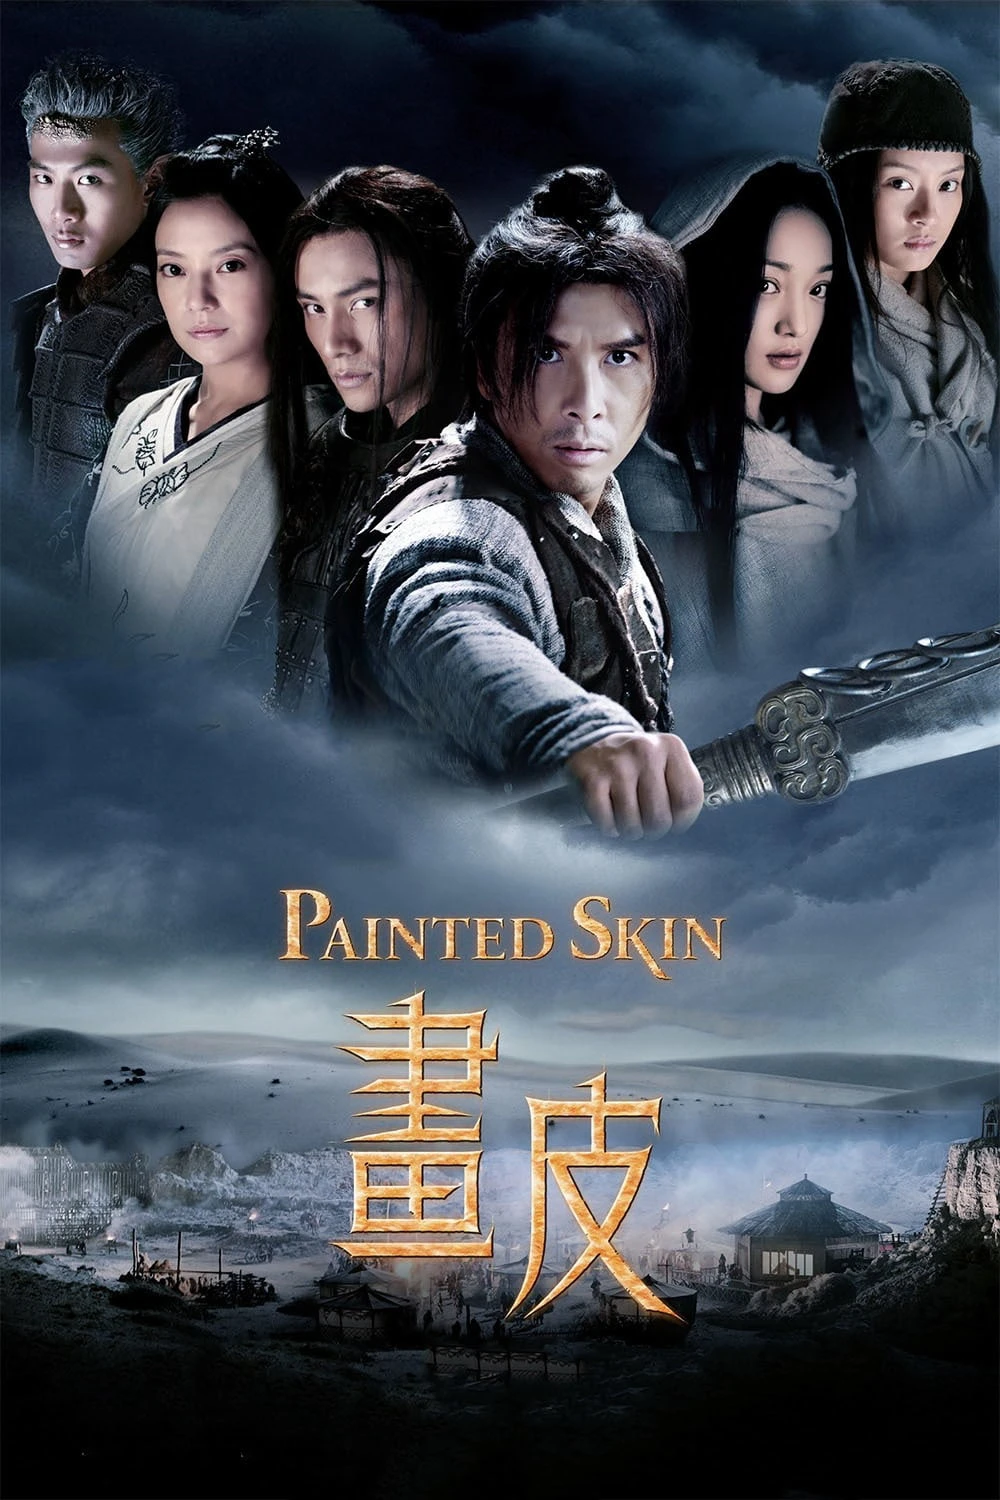 Painted Skin | Painted Skin (2008)